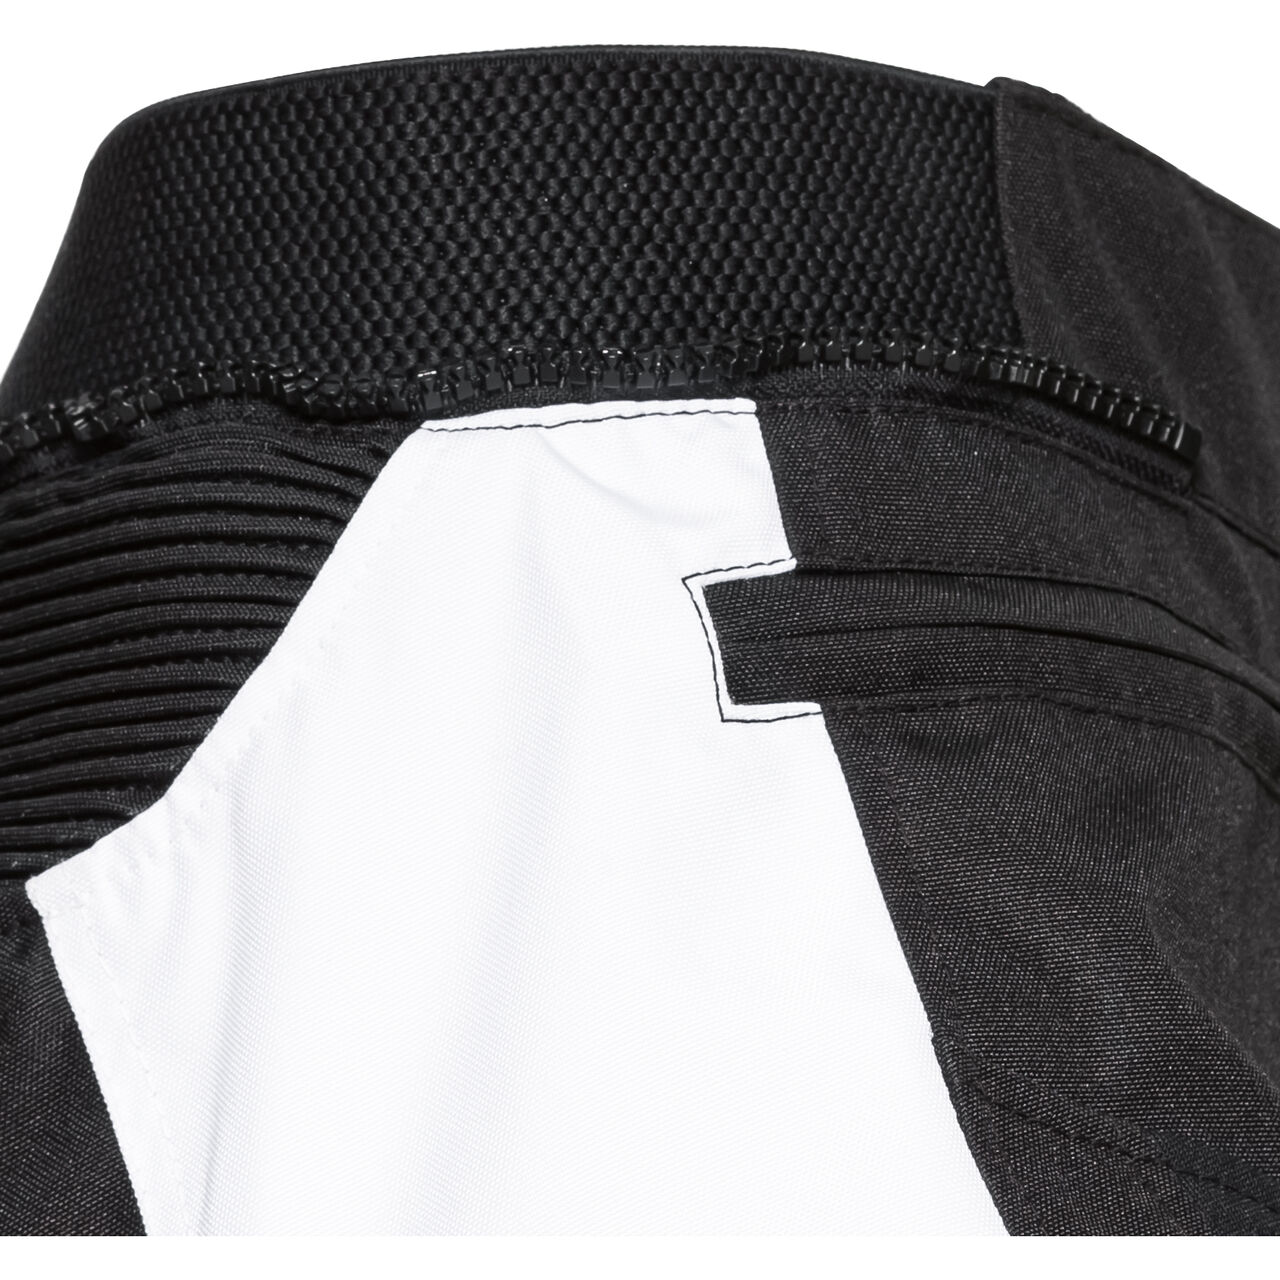 Traction Damen Textilhose schwarz/weiß